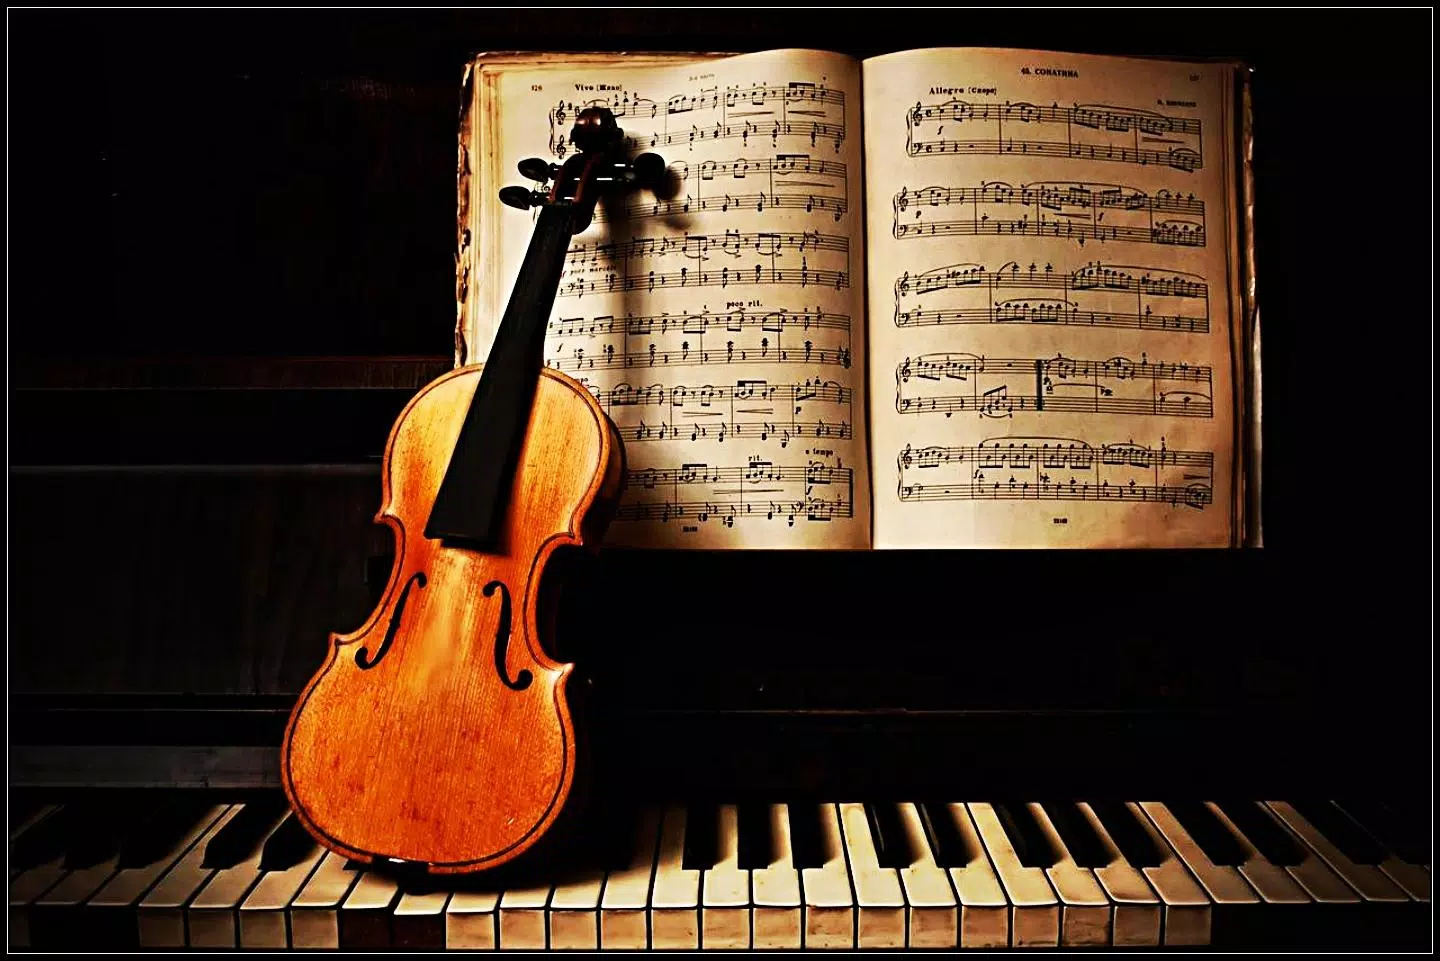 Musica que musica. Скрипка и фортепиано. Классика и современность. Классические музыкальные инструменты. Скрипка и пианино.